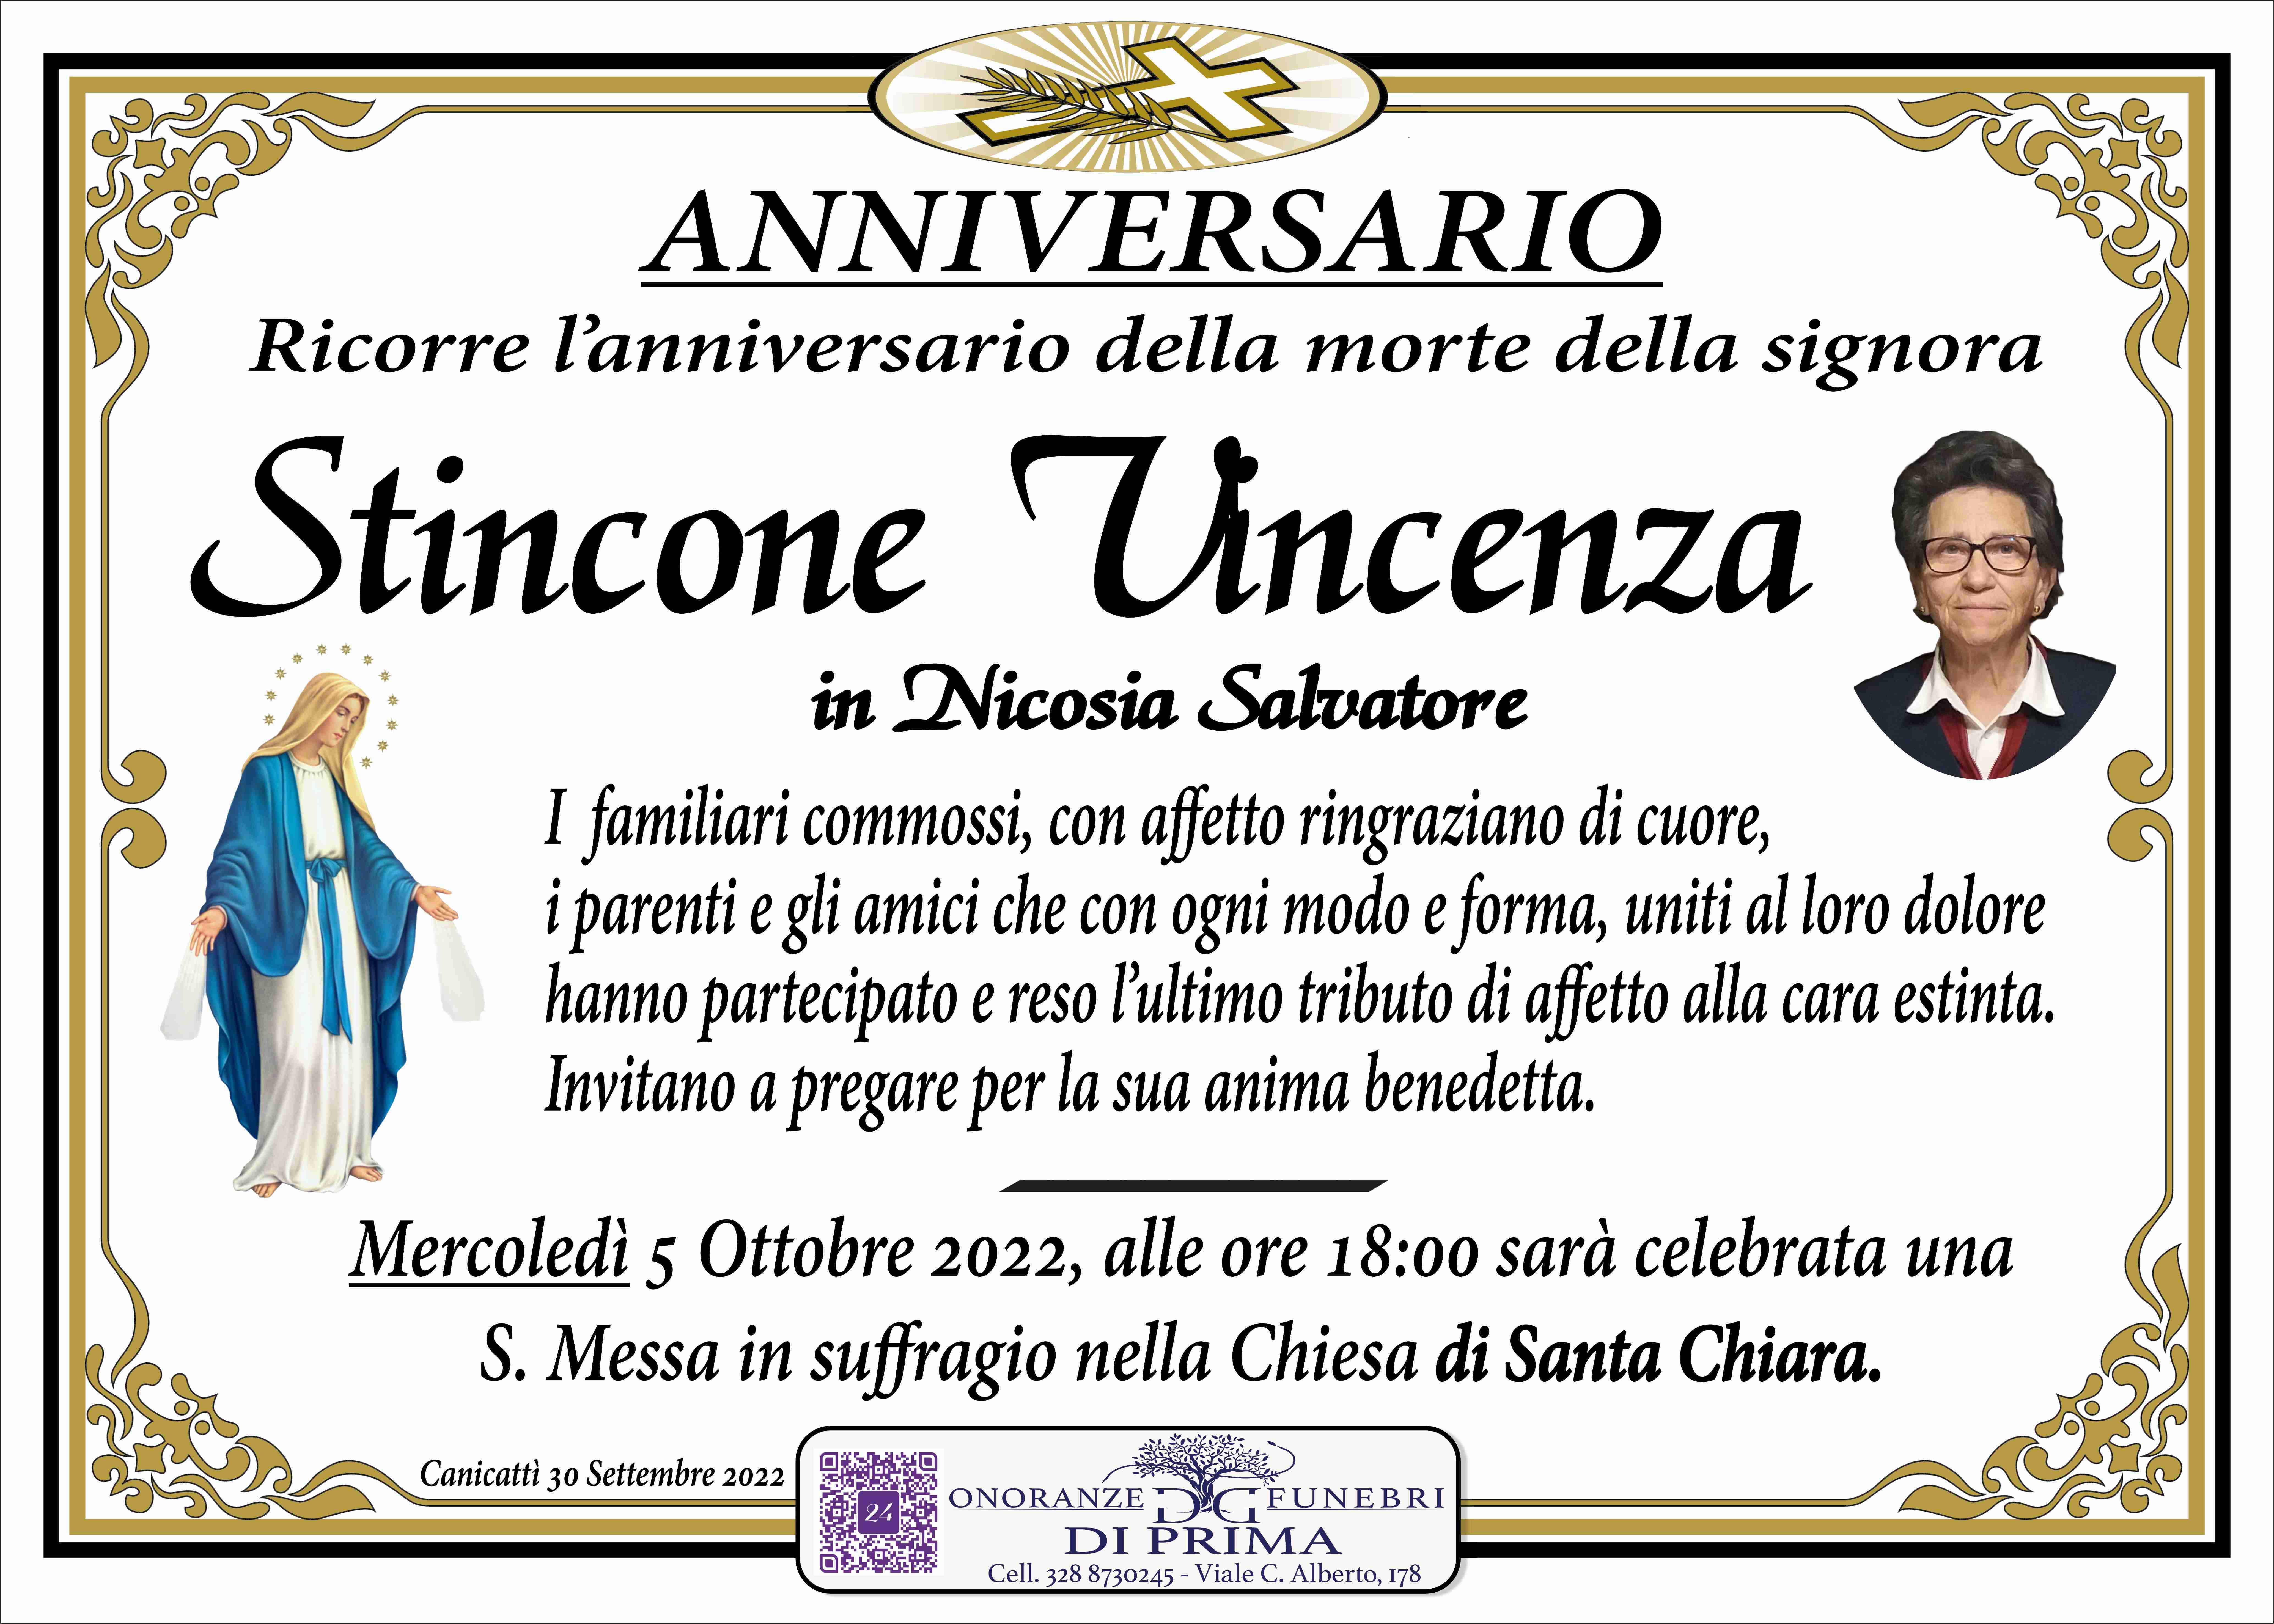 Vincenza Stincone